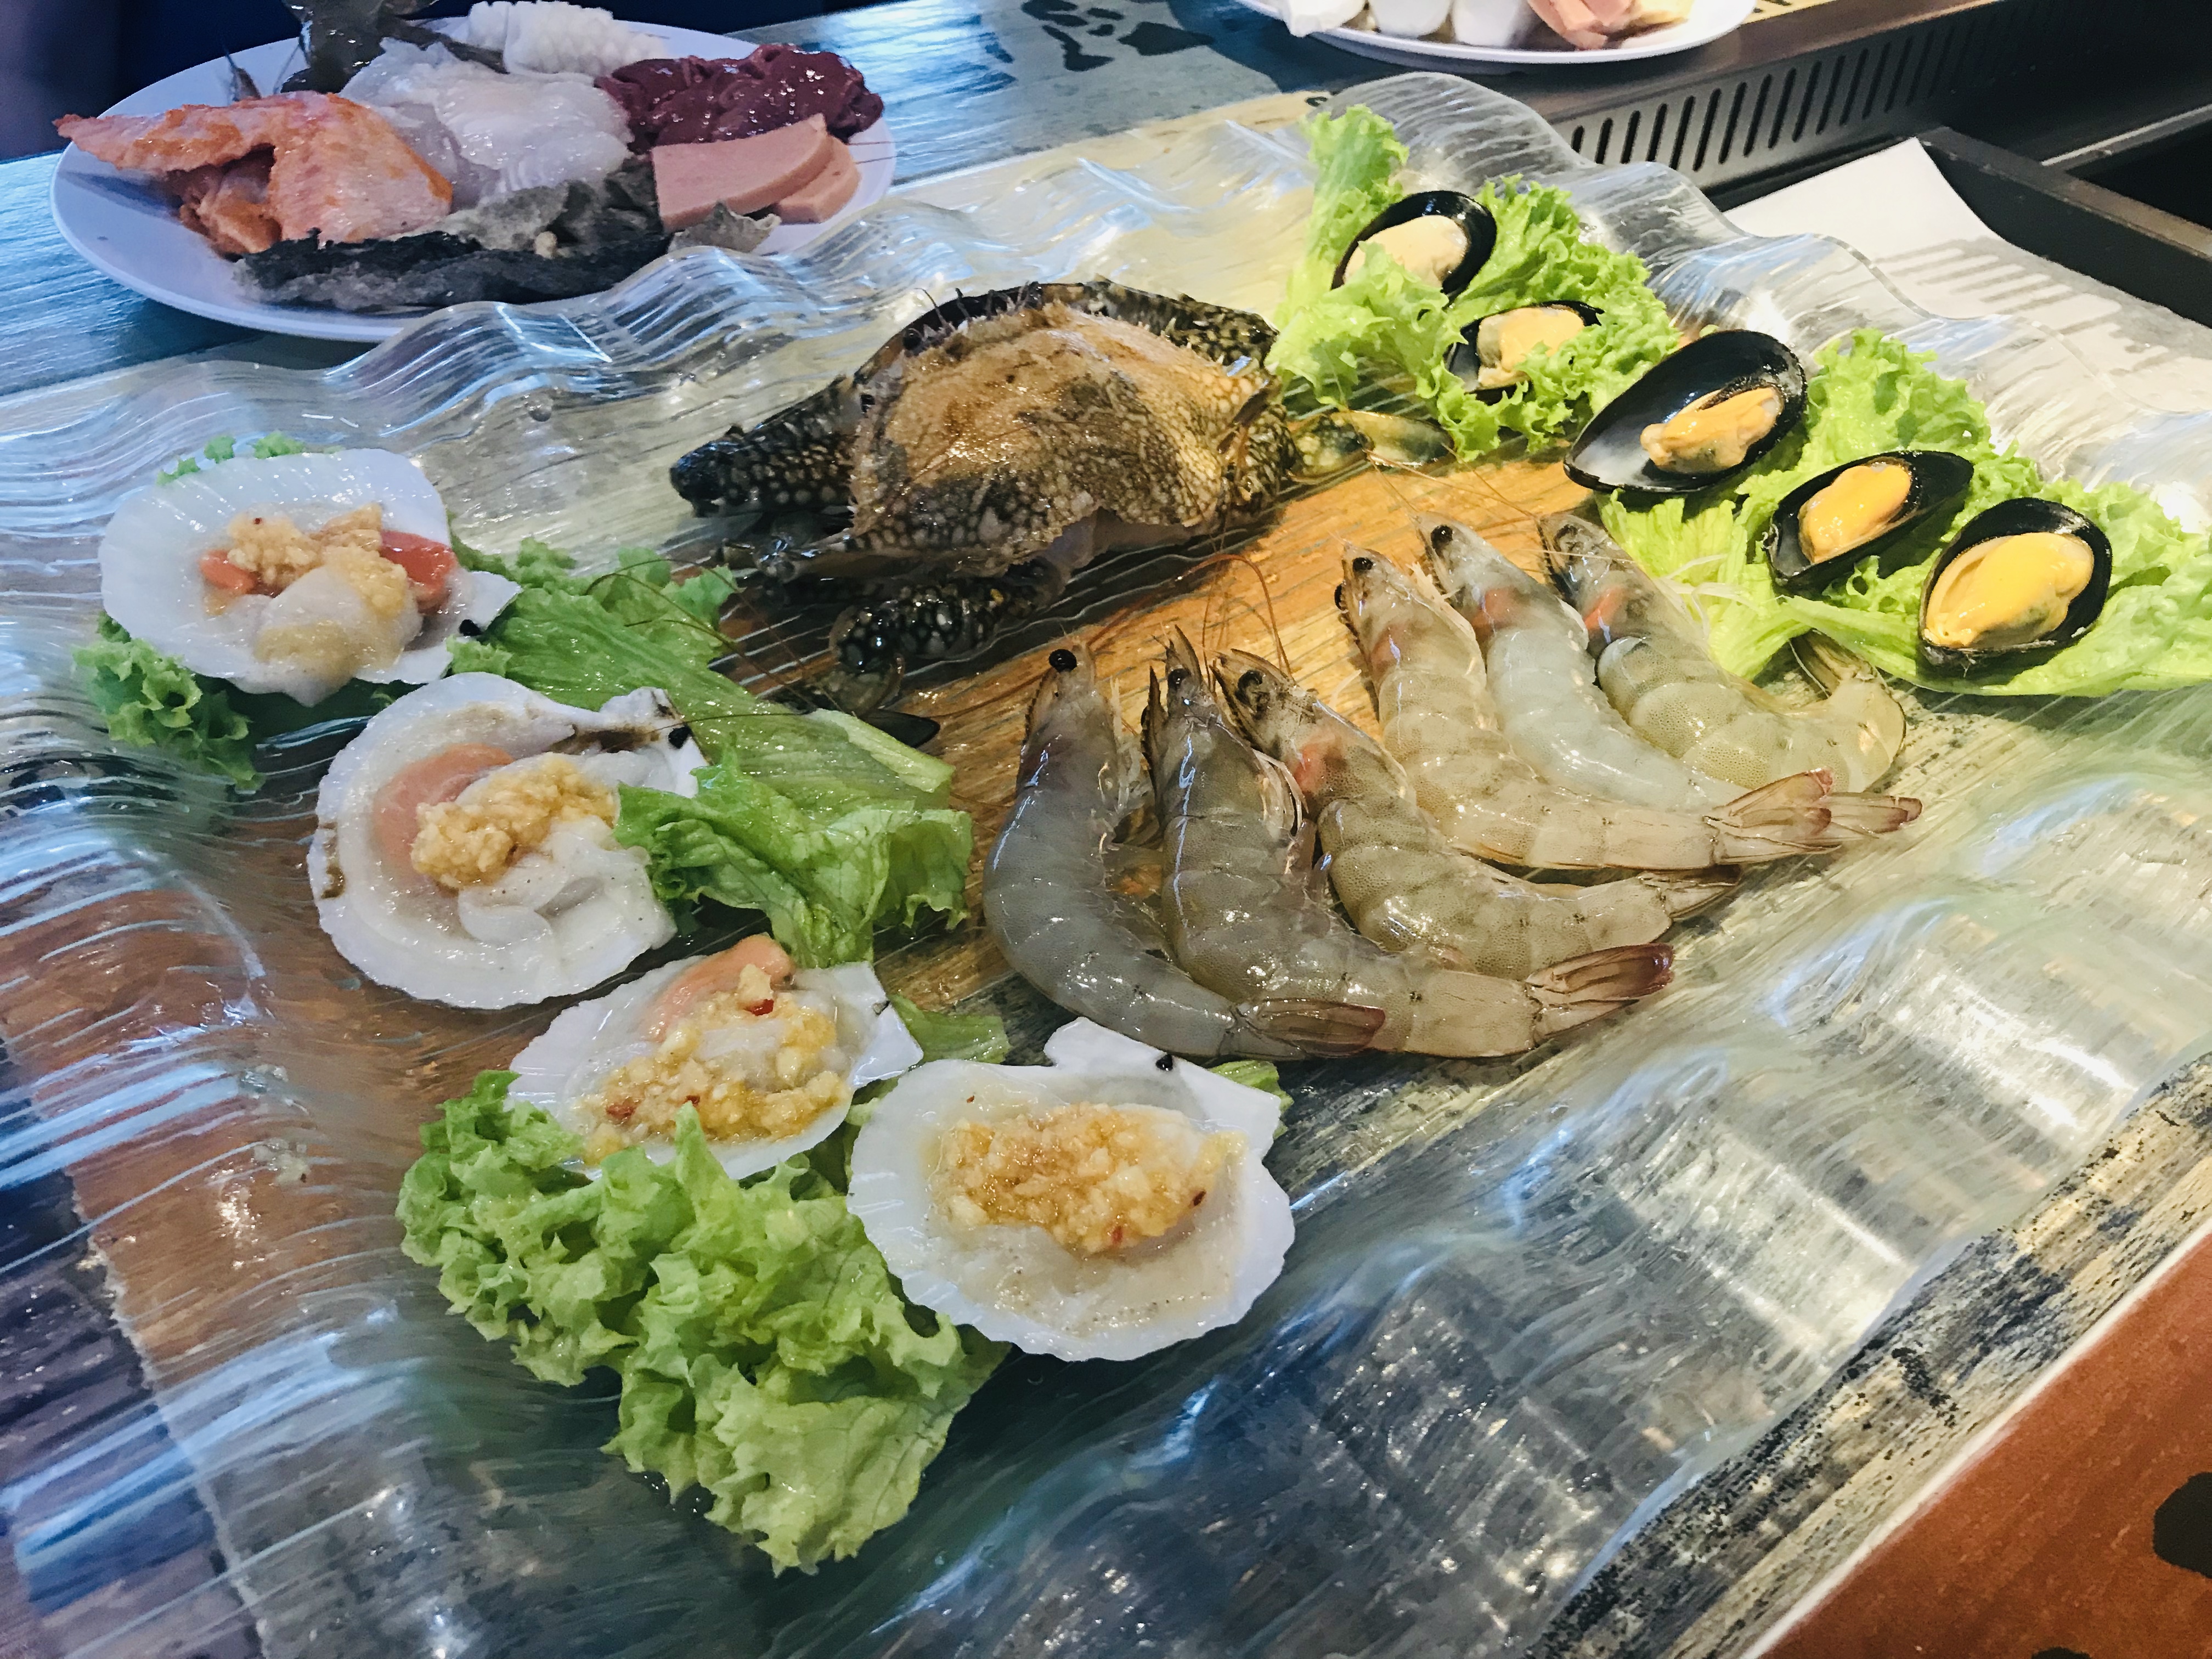 Bugis BBQ & Hotpot Buffet - Seafood Platter